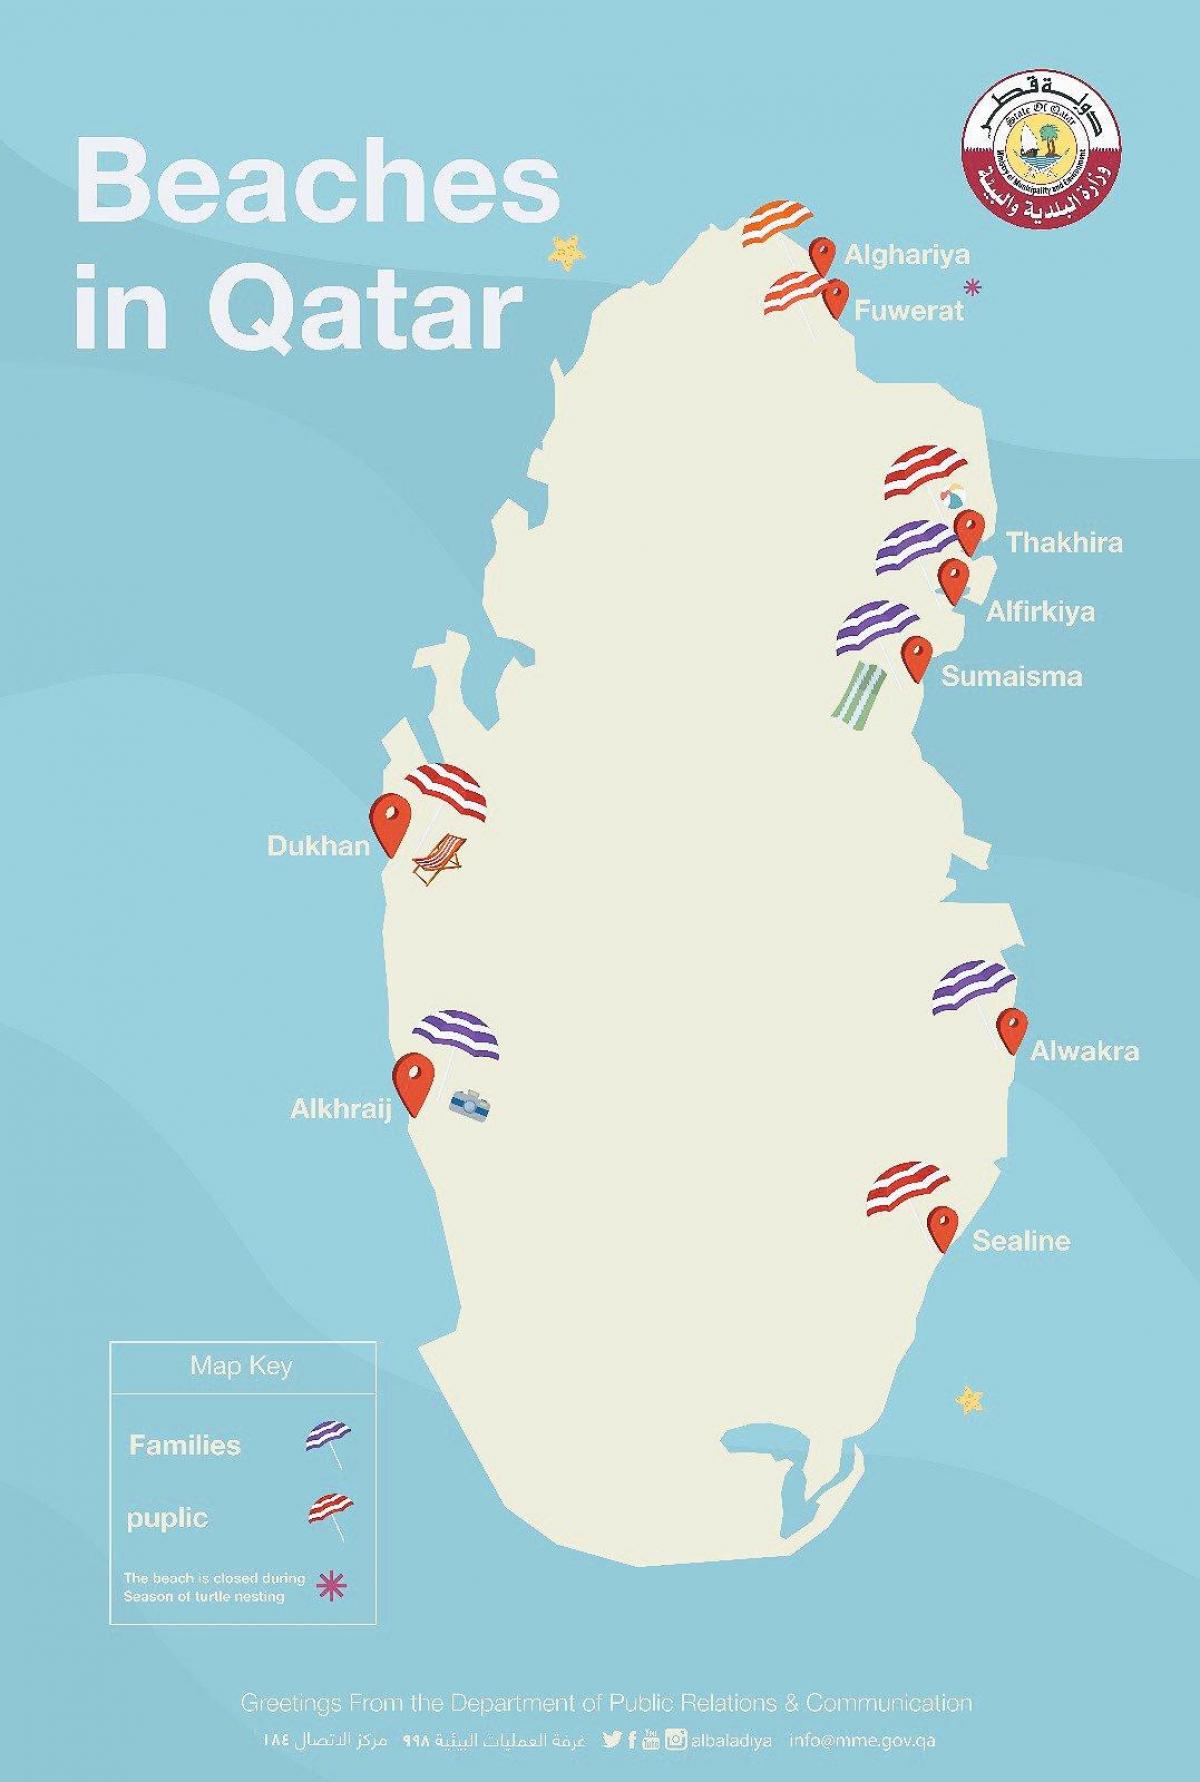 Những bãi biển chưa được khám phá ở Qatar đang chờ đón bạn. Hãy xem qua bản đồ bãi biển ở Qatar để tìm kiếm những cảnh quan đẹp nhất và tận hưởng những phút giây thư giãn tuyệt vời cùng gia đình và bạn bè.